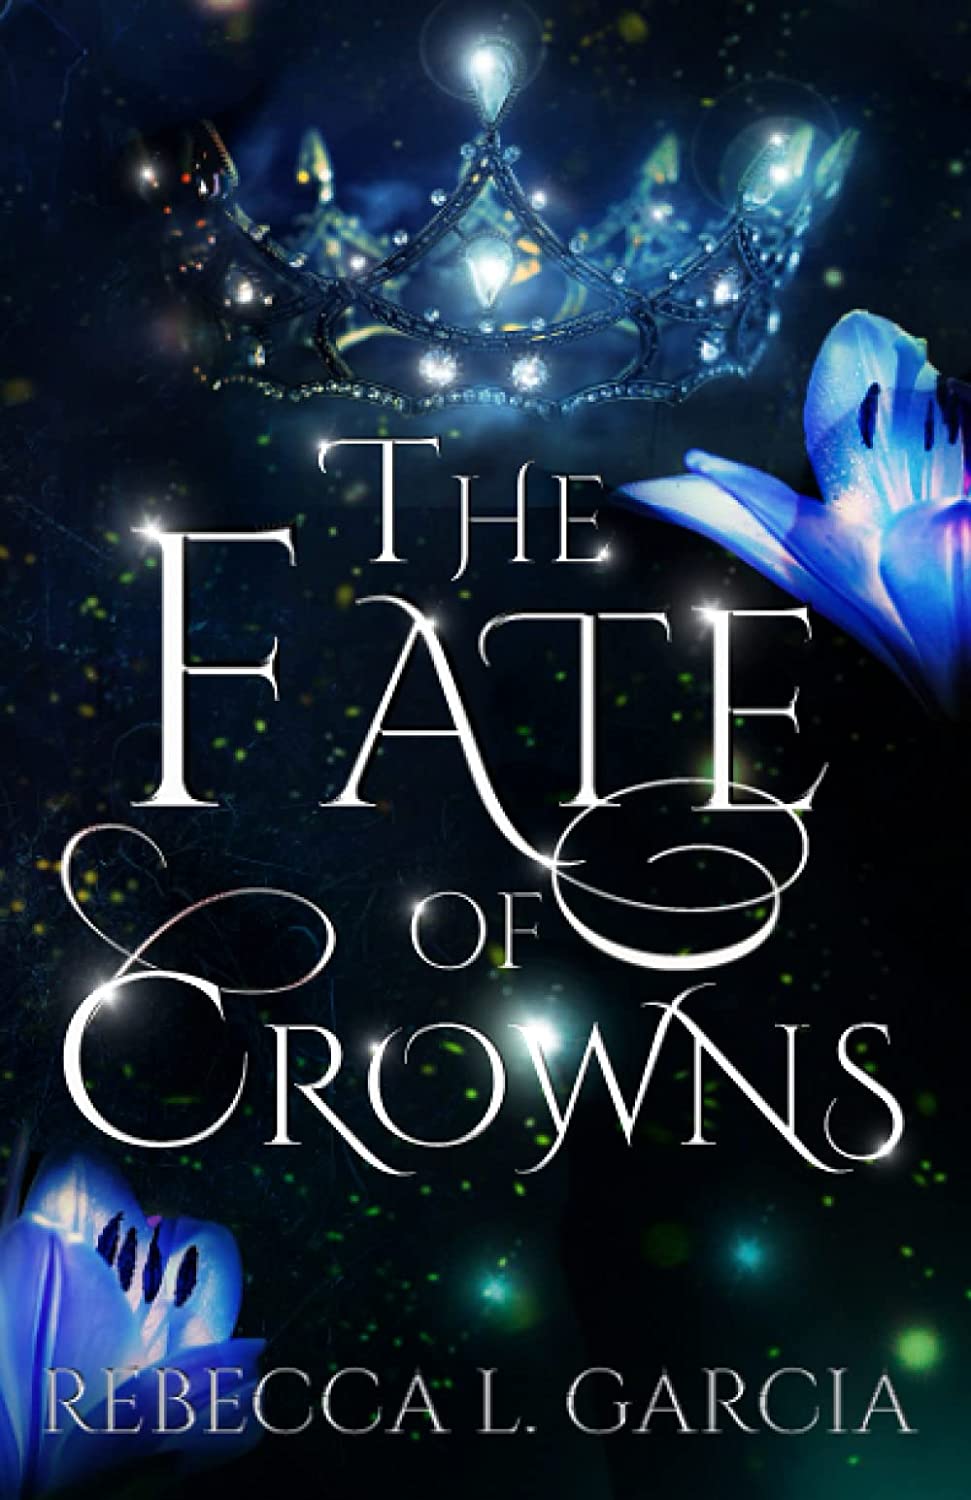 The Fate of Crowns by Rebecca L. Garcia